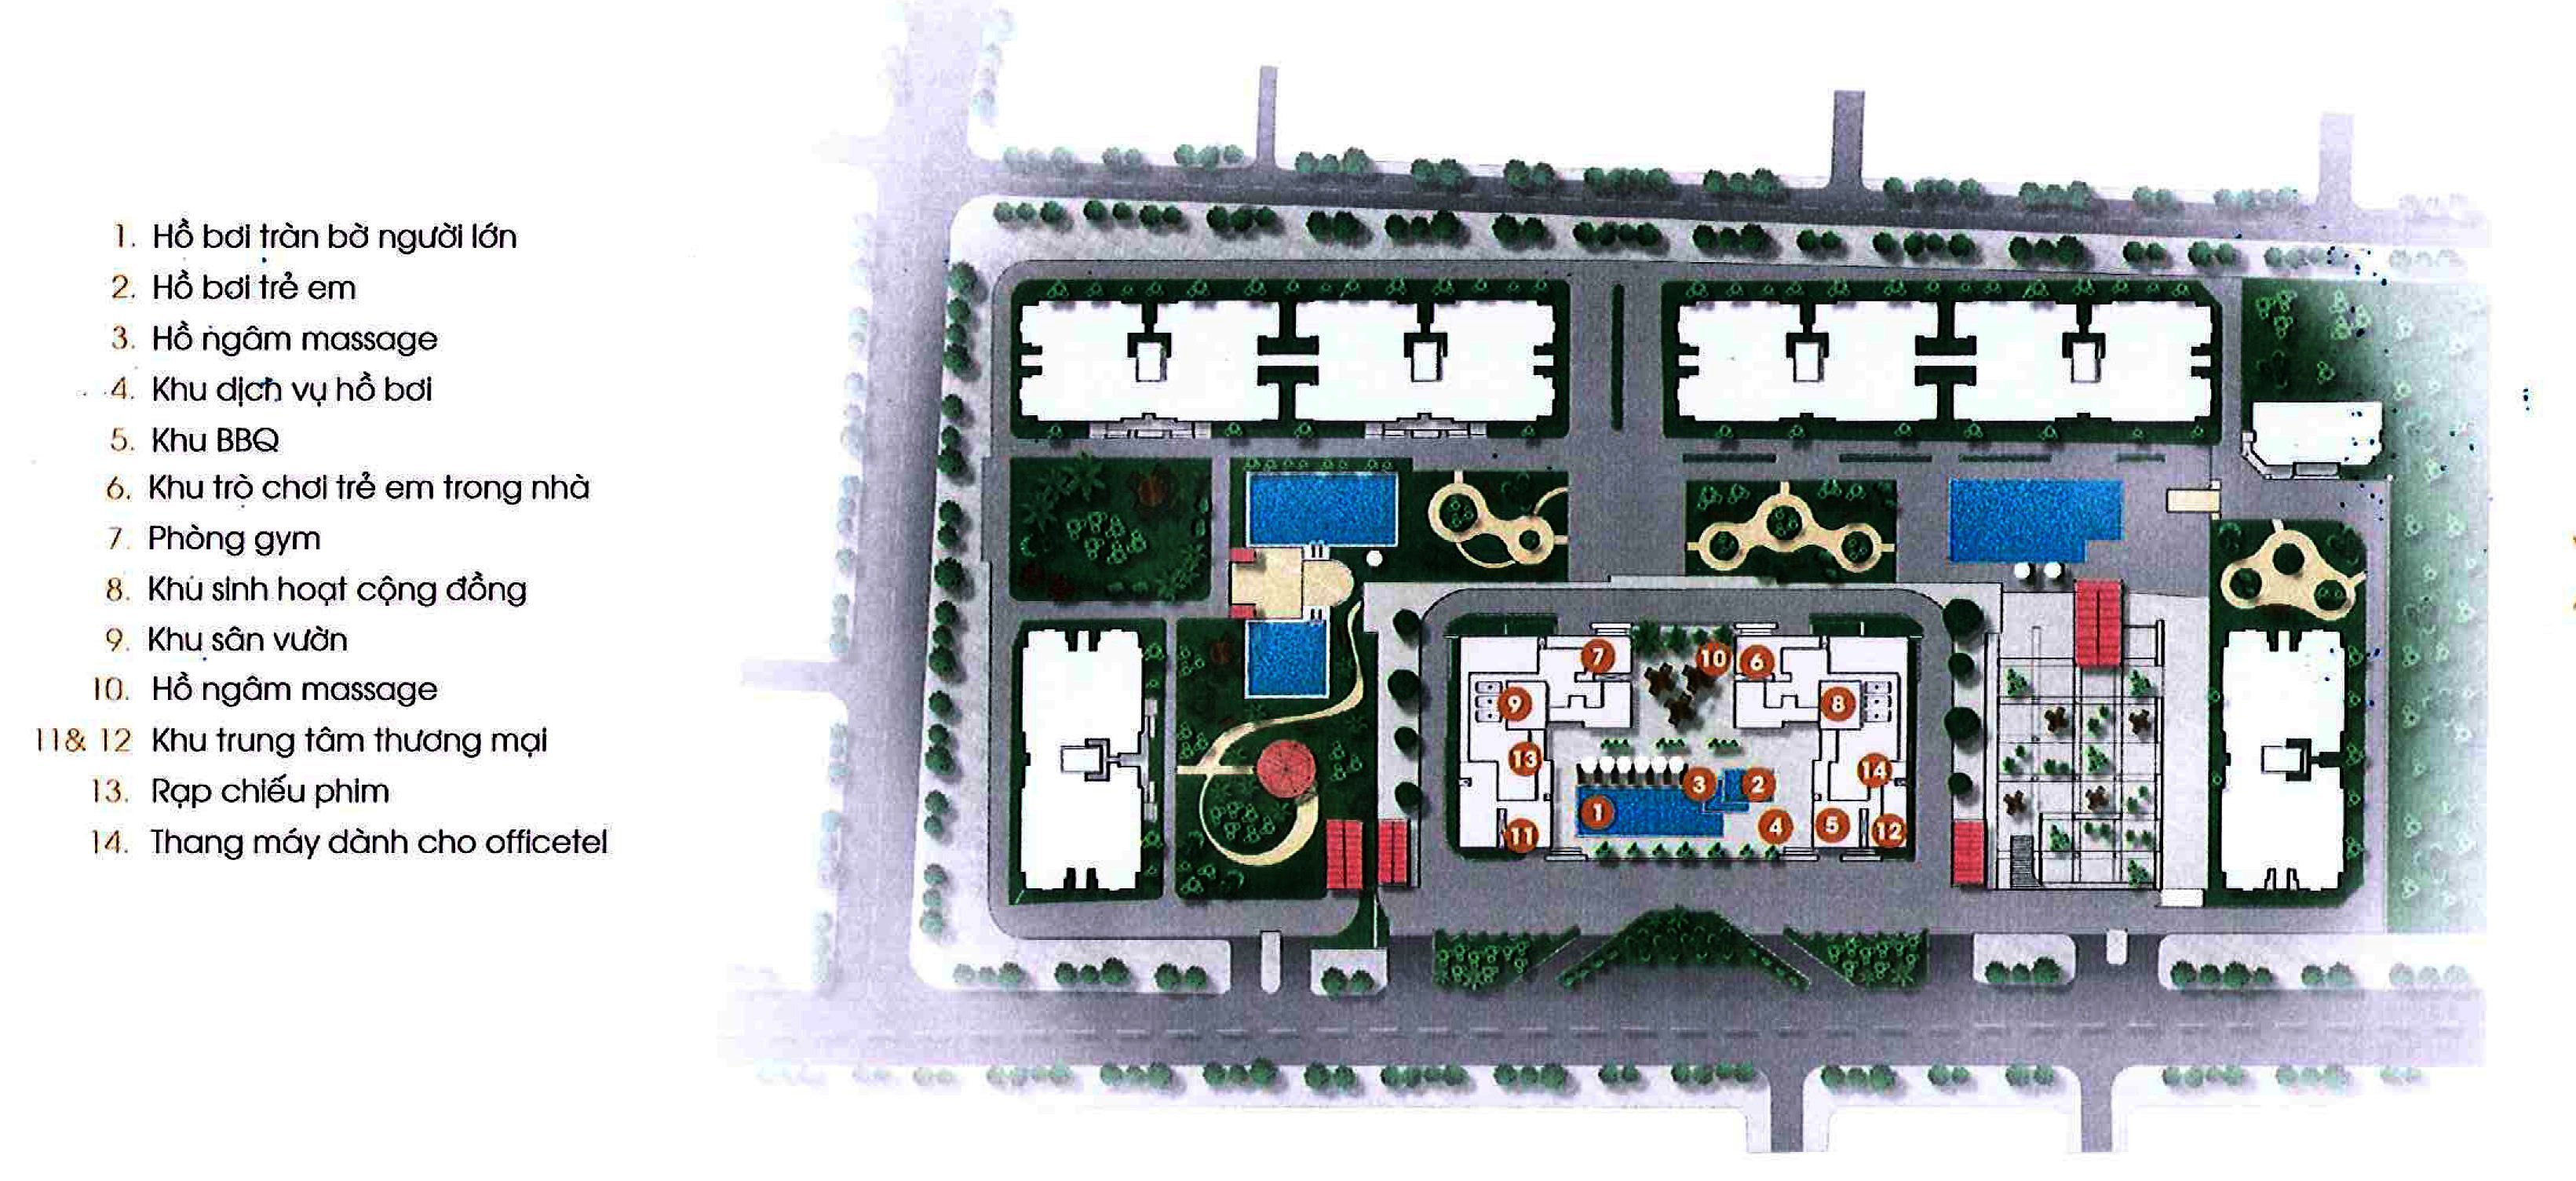 Hệ thống tiện ích nội khu tại dự án Chung cư Central Premium